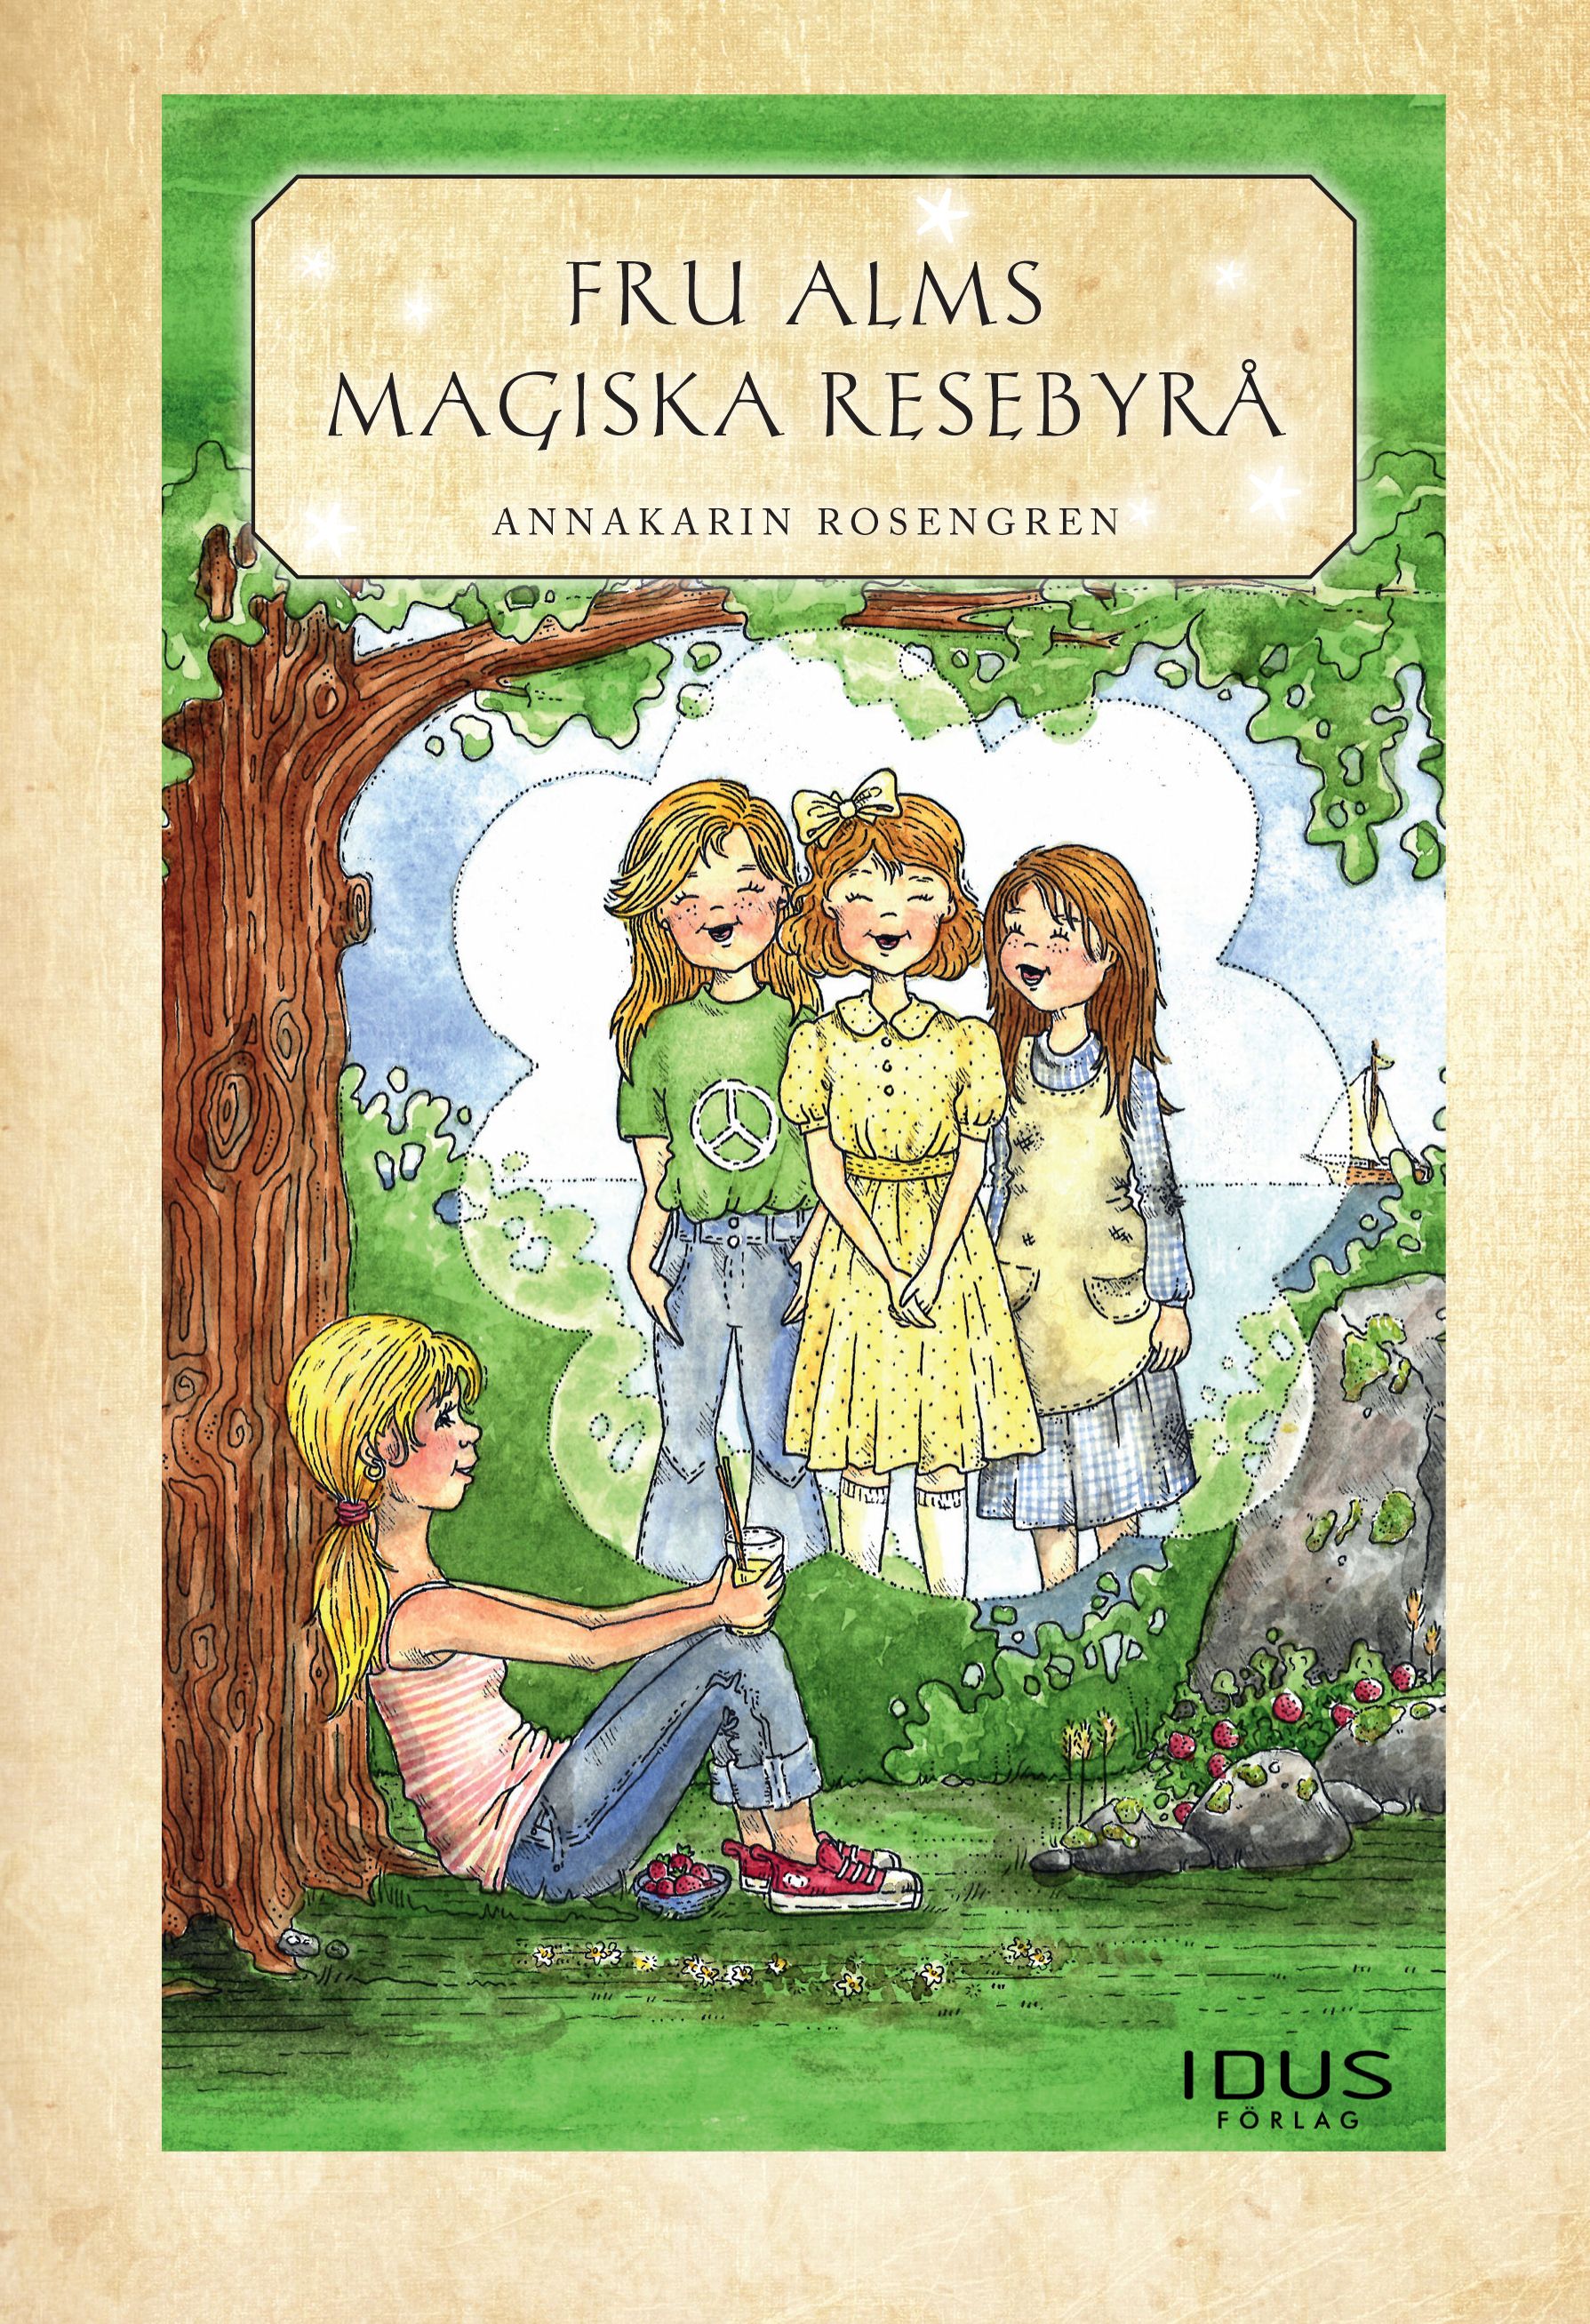 Fru Alms magiska resebyrå, e-bok av Annakarin Rosengren